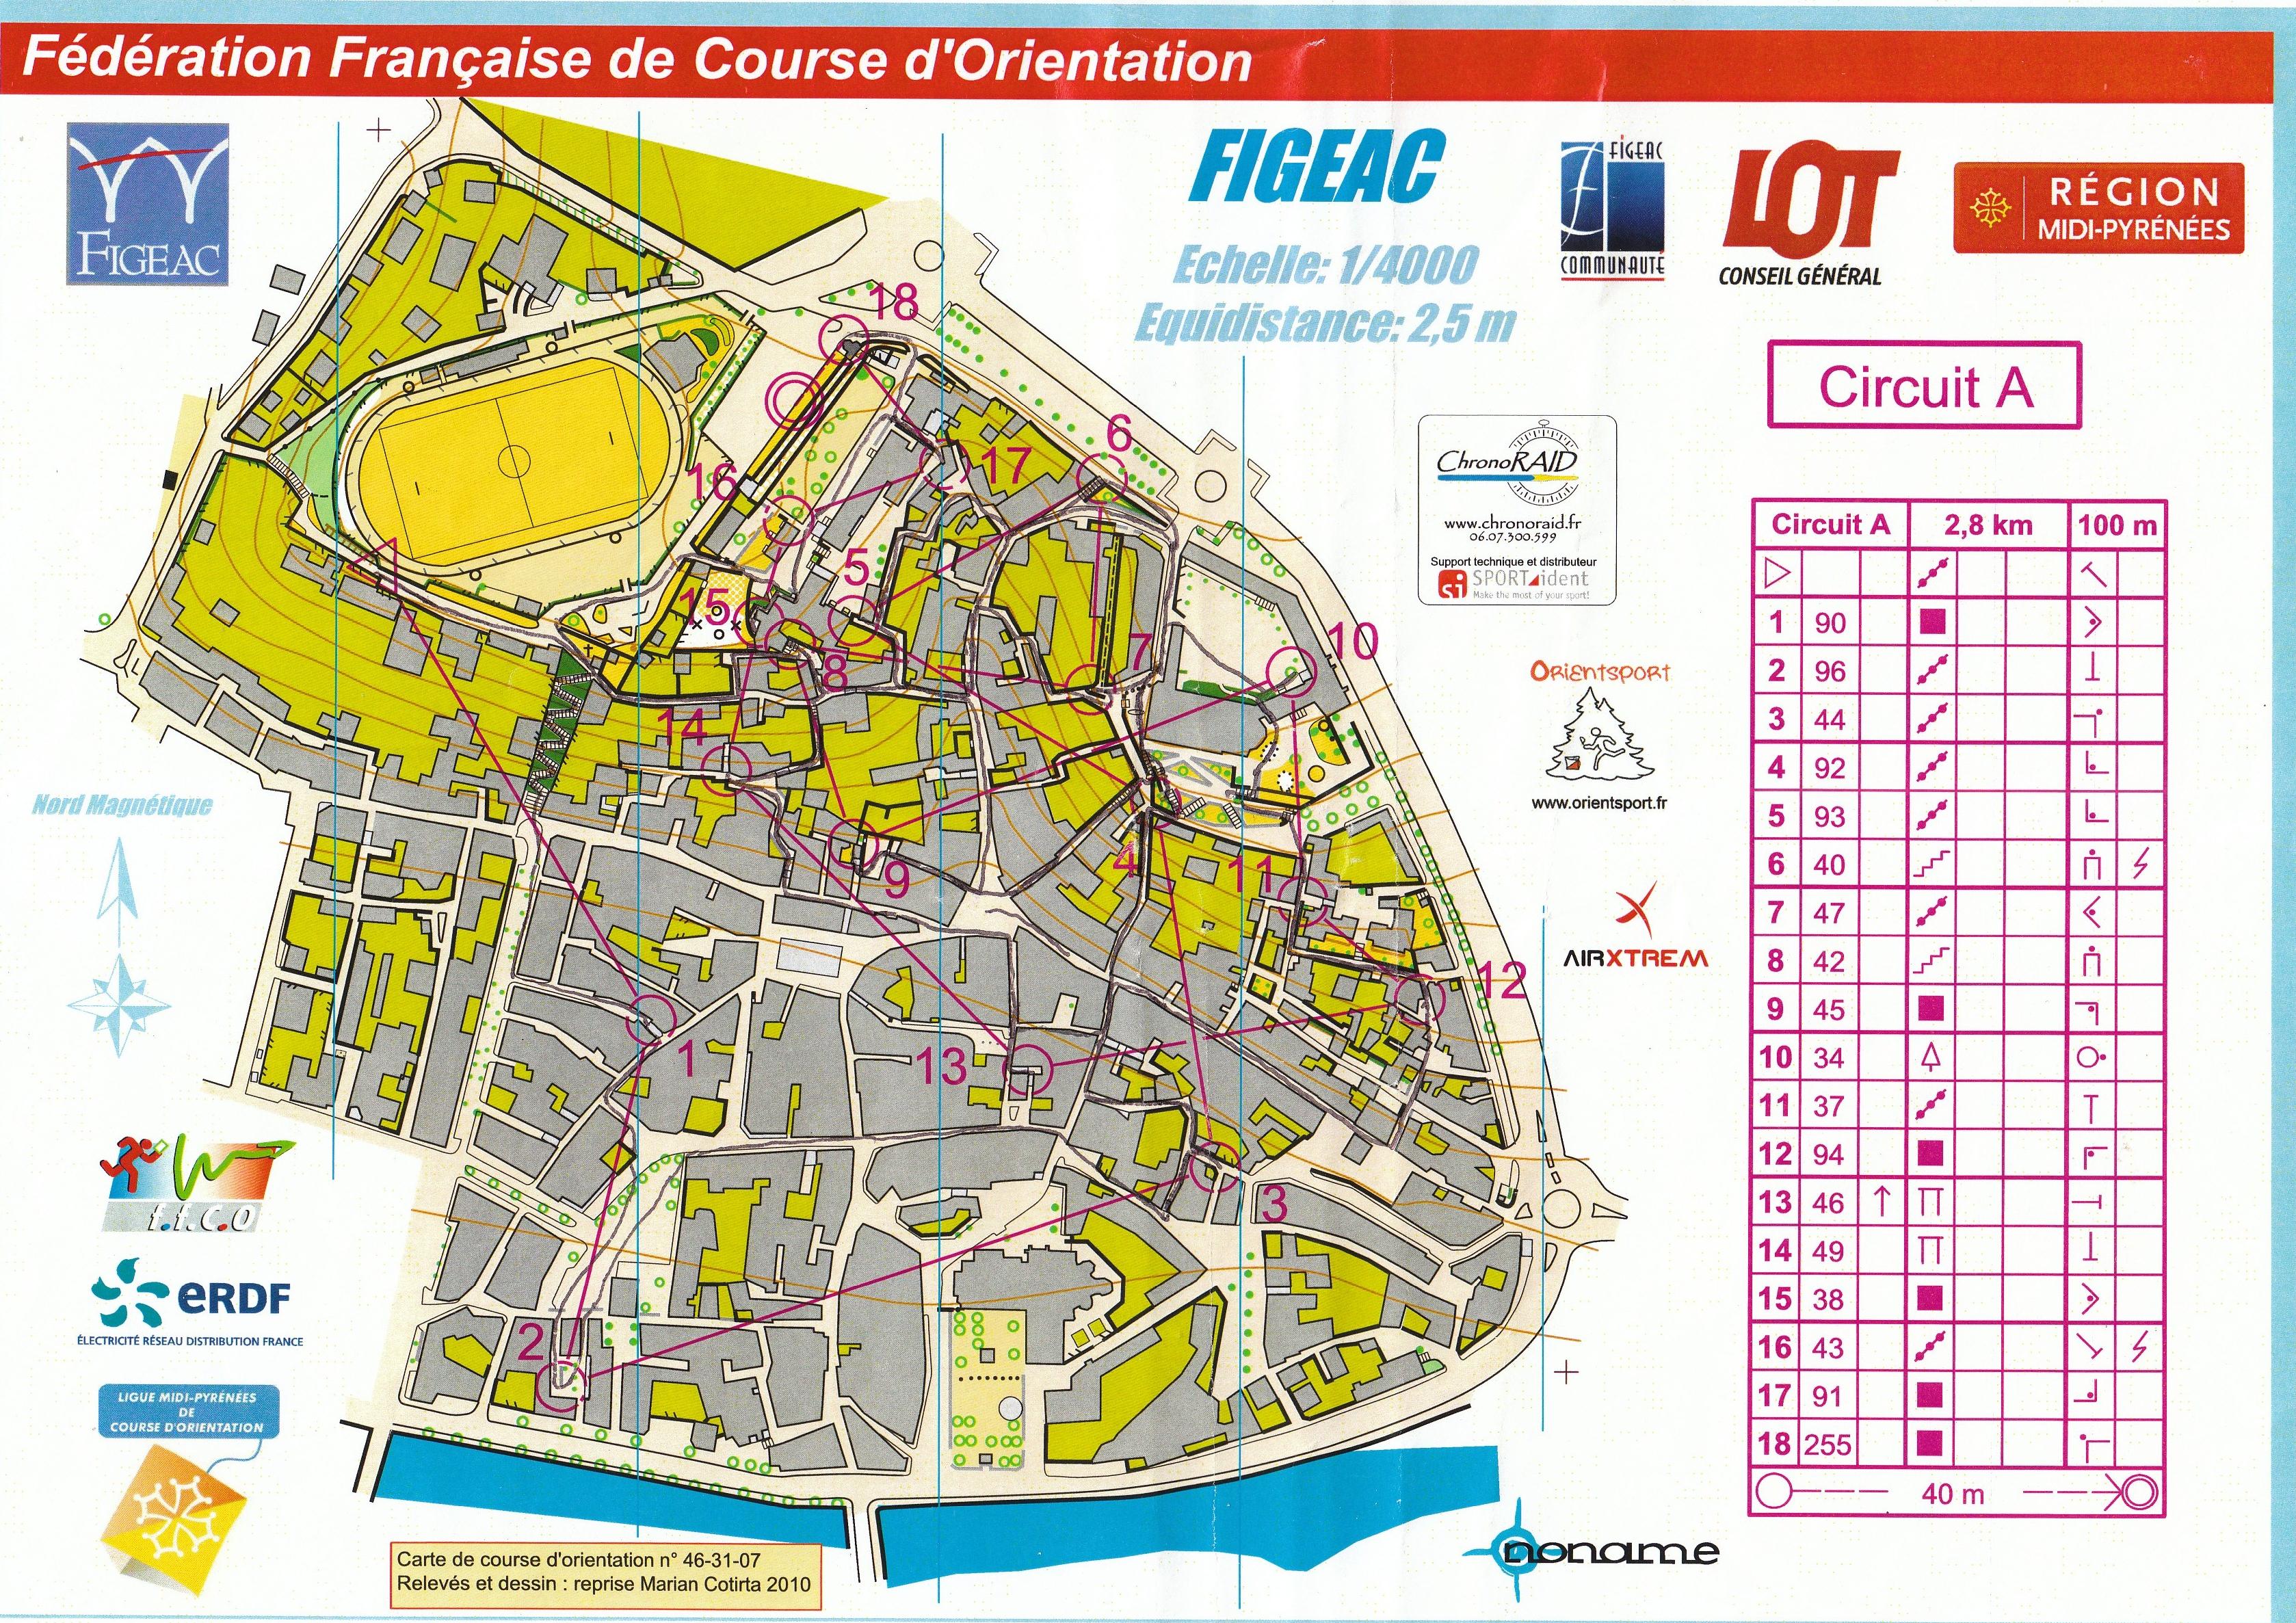 Open Sprint (Finale Championnat de France) (30.10.2010)